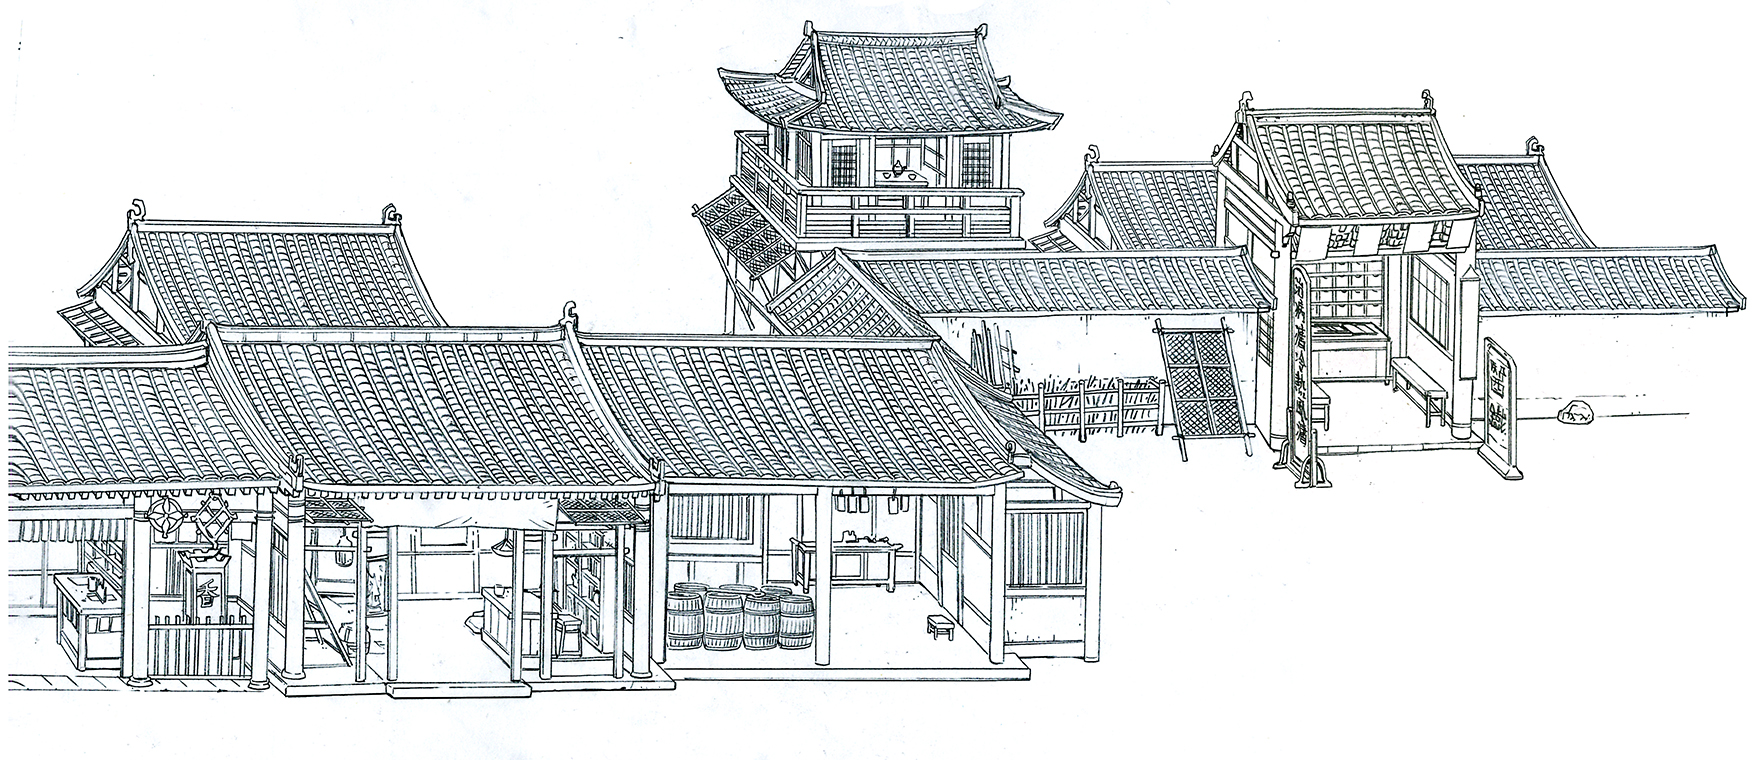 天宝哥画的建筑线稿:城楼上排的小房子